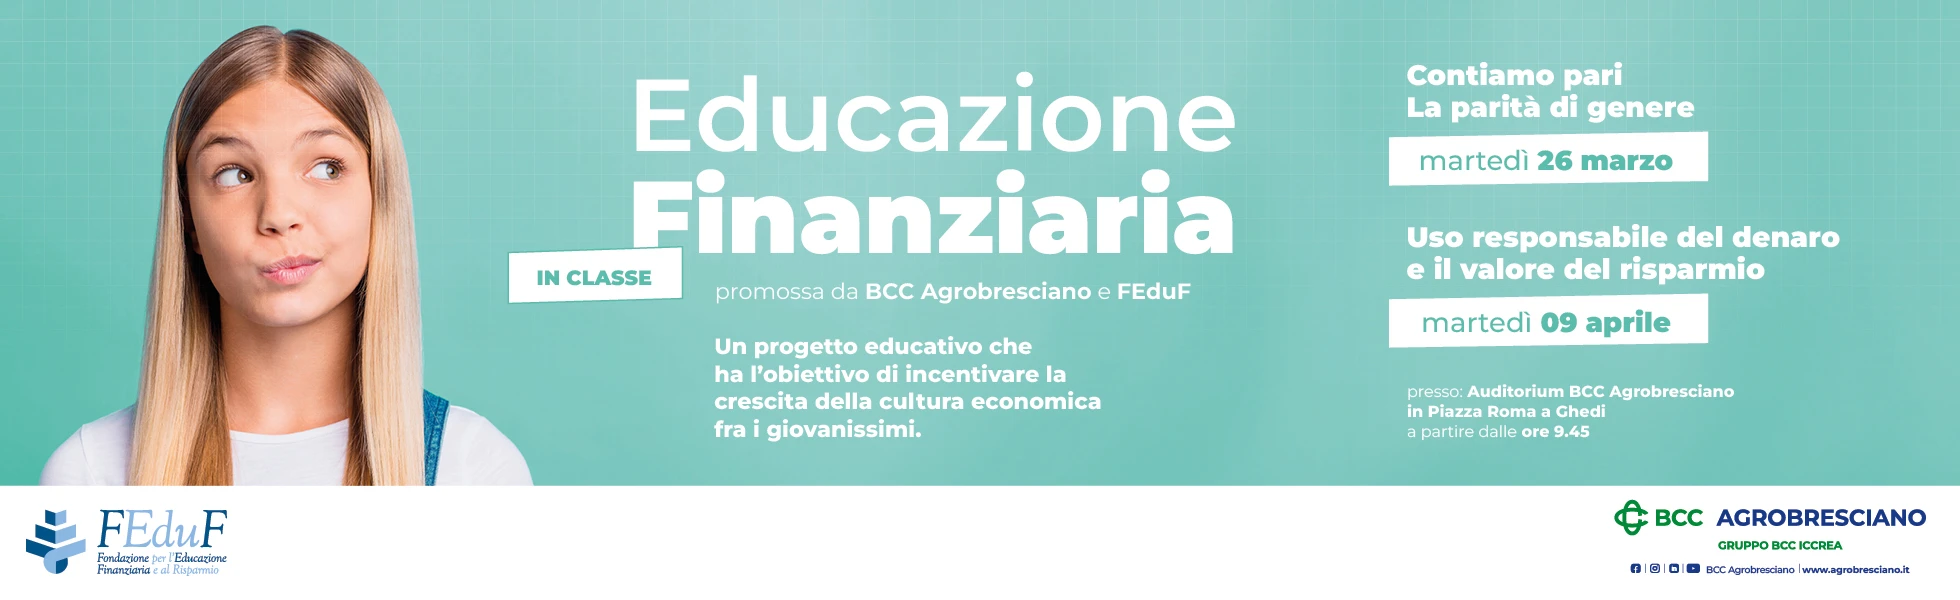 BANNER_sito_Educazione Finanziaria_800x532px